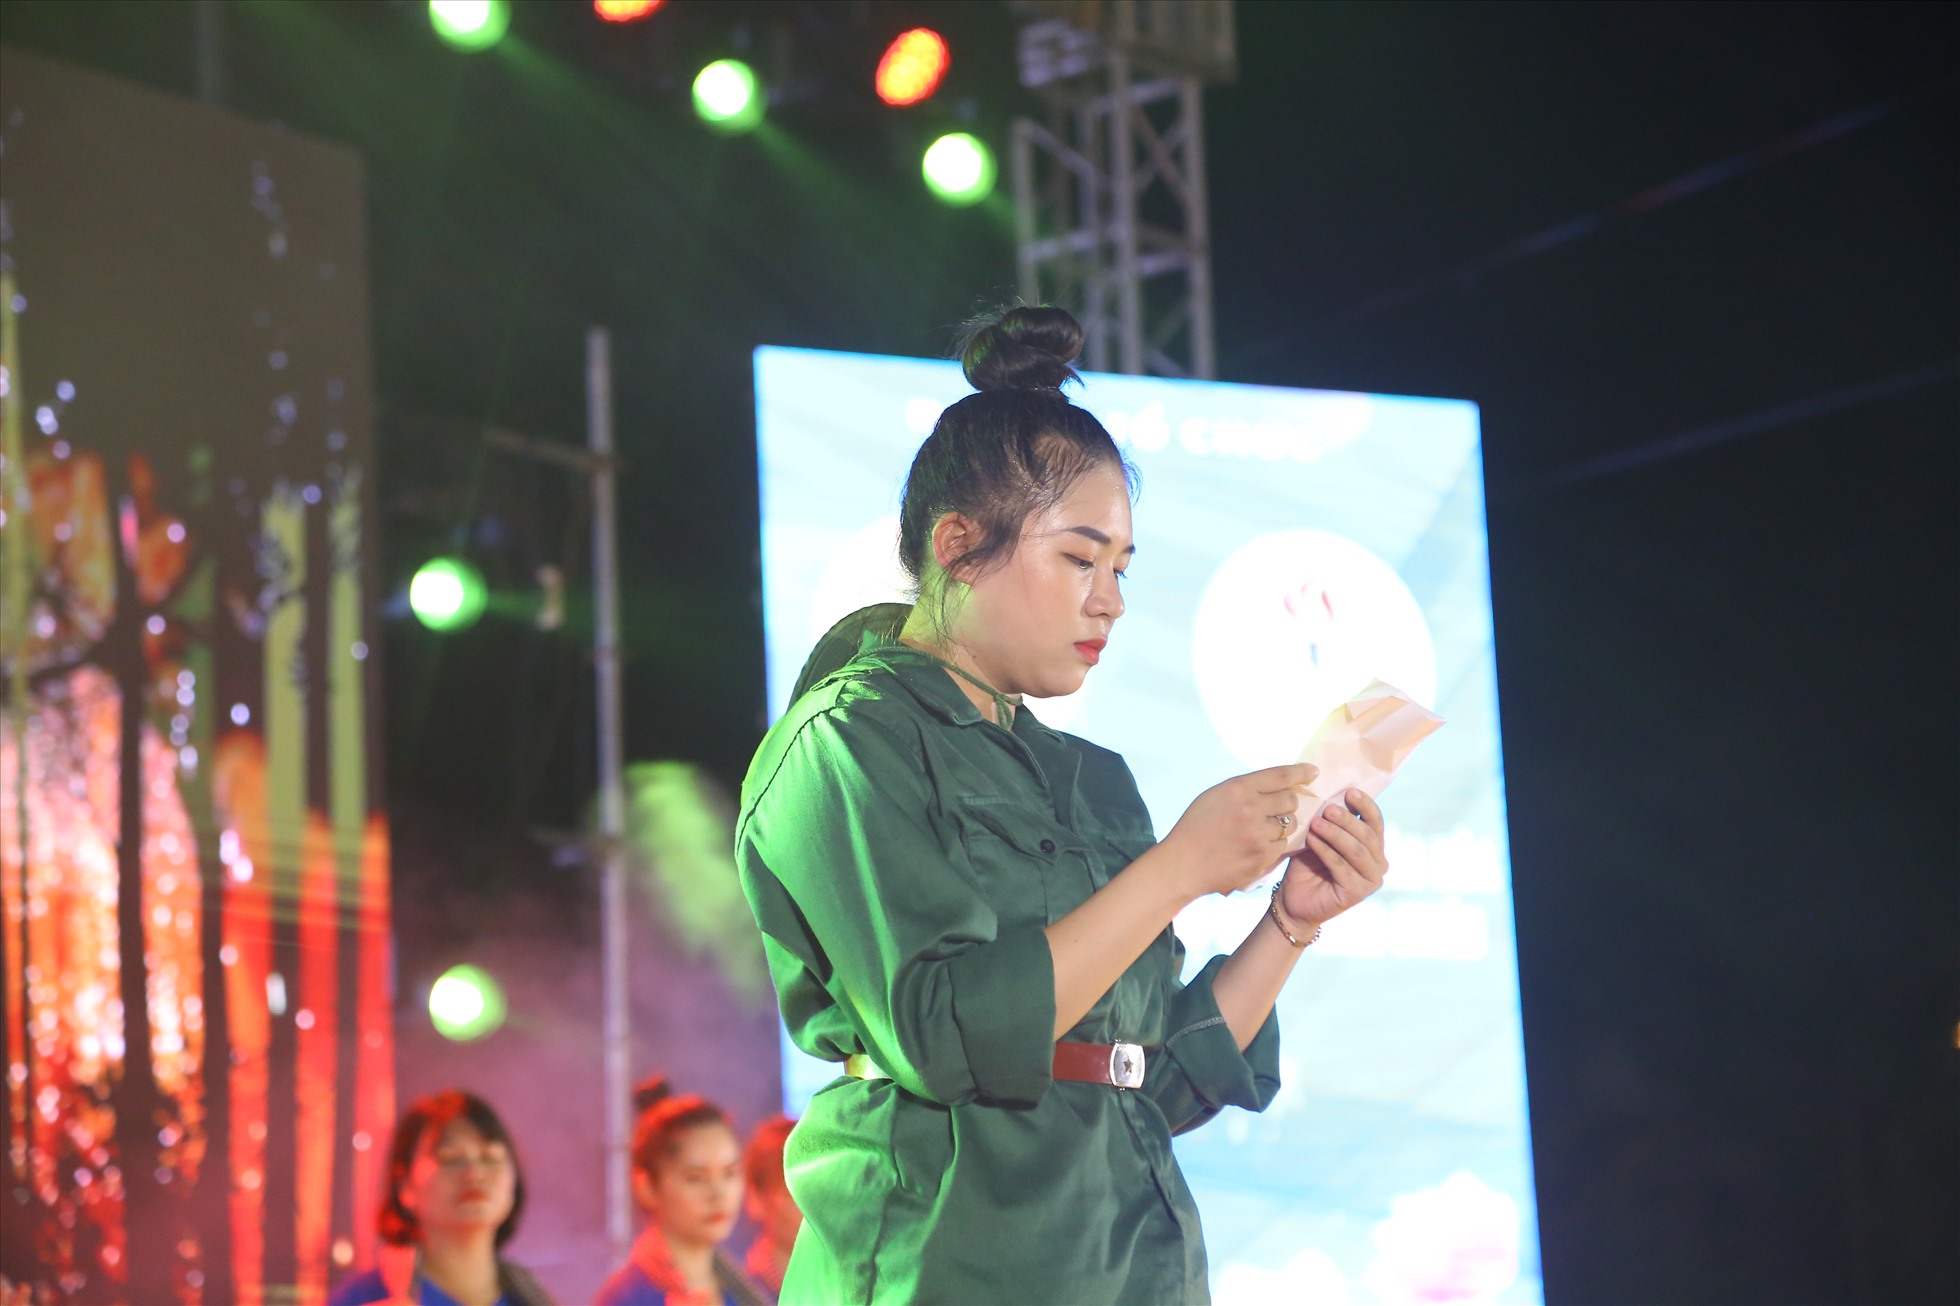 Nối tiếp là phần thể hiện của Công đoàn phường Hòa Khánh Nam ở thể loại hát múa, đơn ca về tổ quốc Việt Nam.